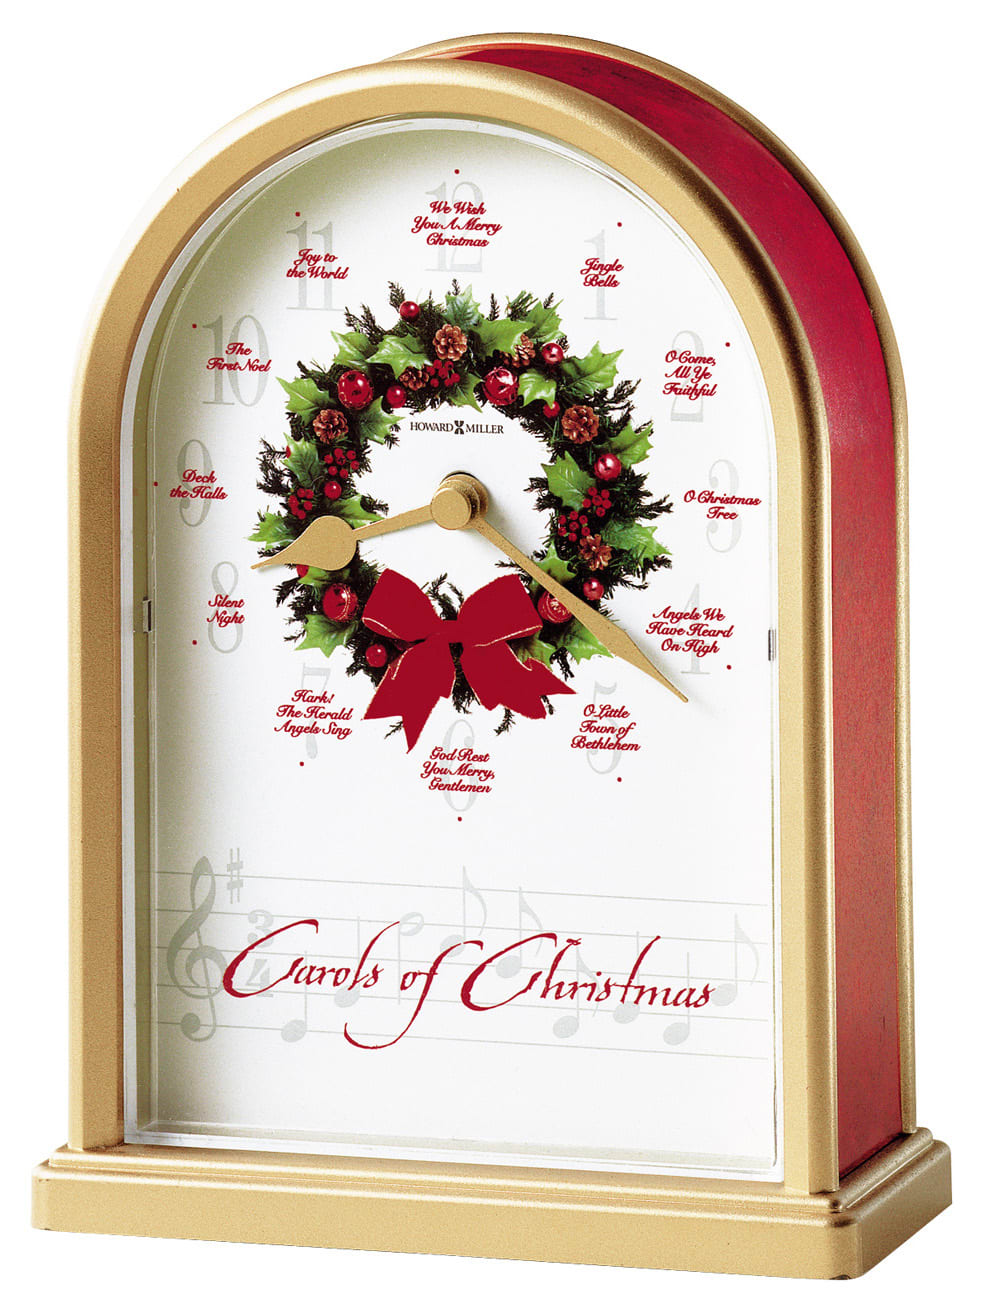 Howard Miller Carols Of Christmas II Tabletop Clock 645424